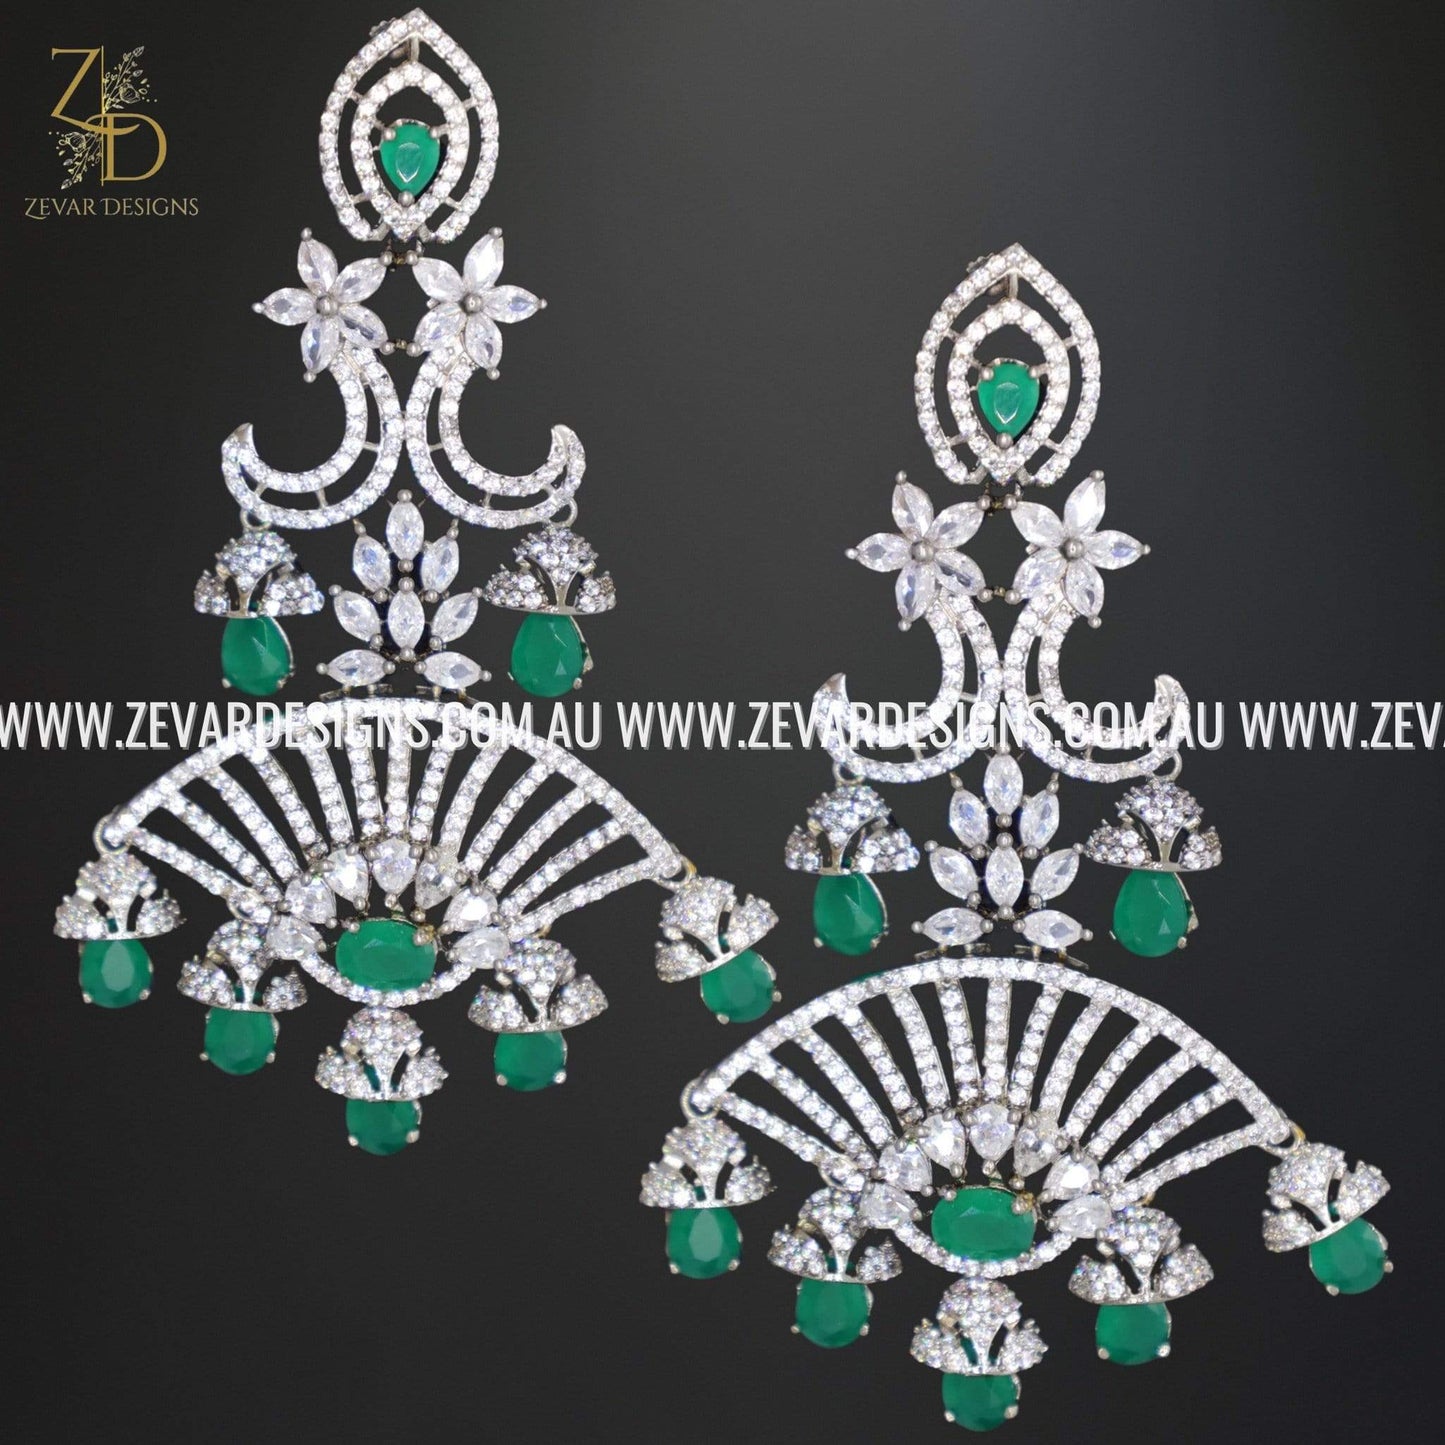 Zevar Designs Indo-Western Earrings AD/Zircon Earrings - Emerald Green